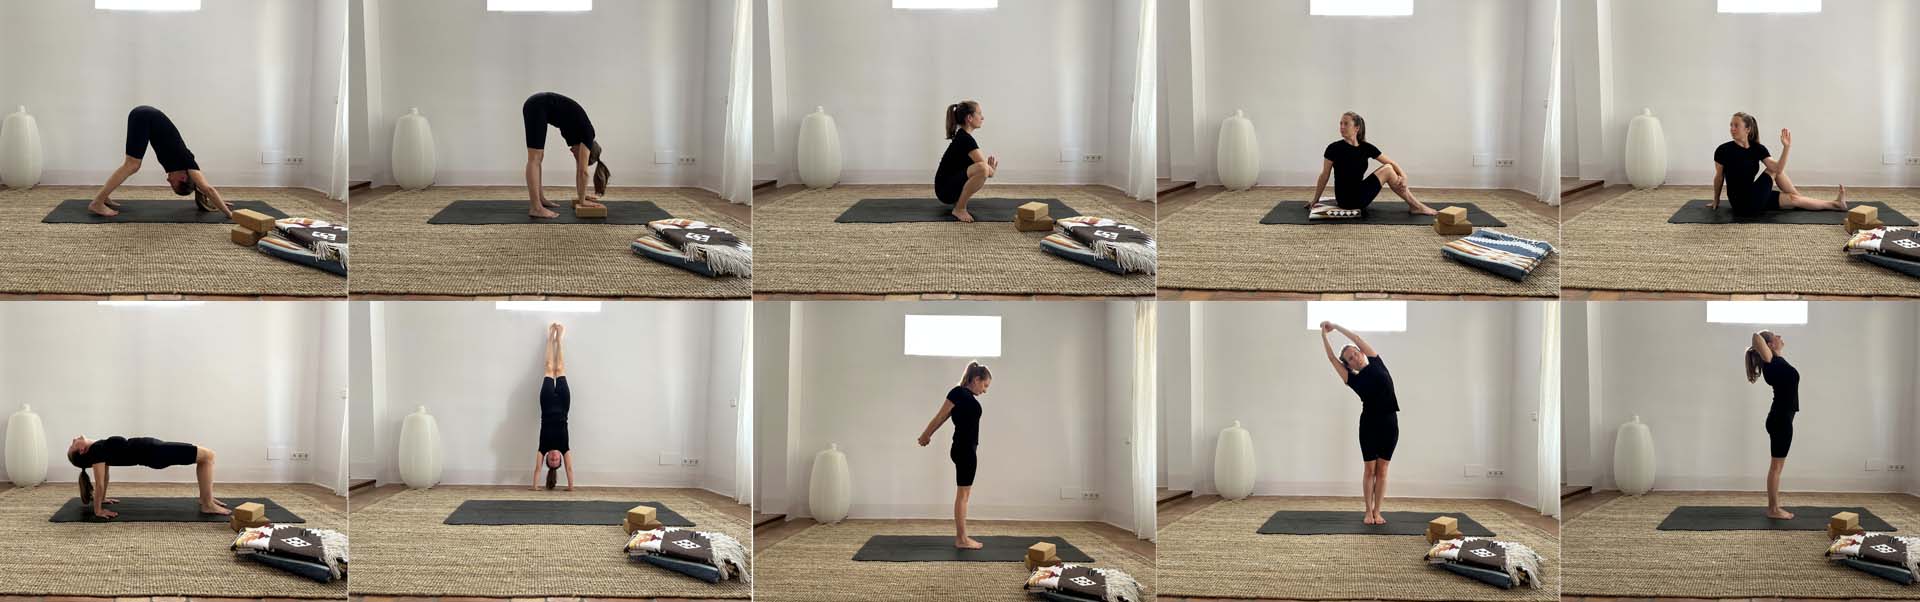 Professeur de Yoga faisant une séquence de 10 asanas